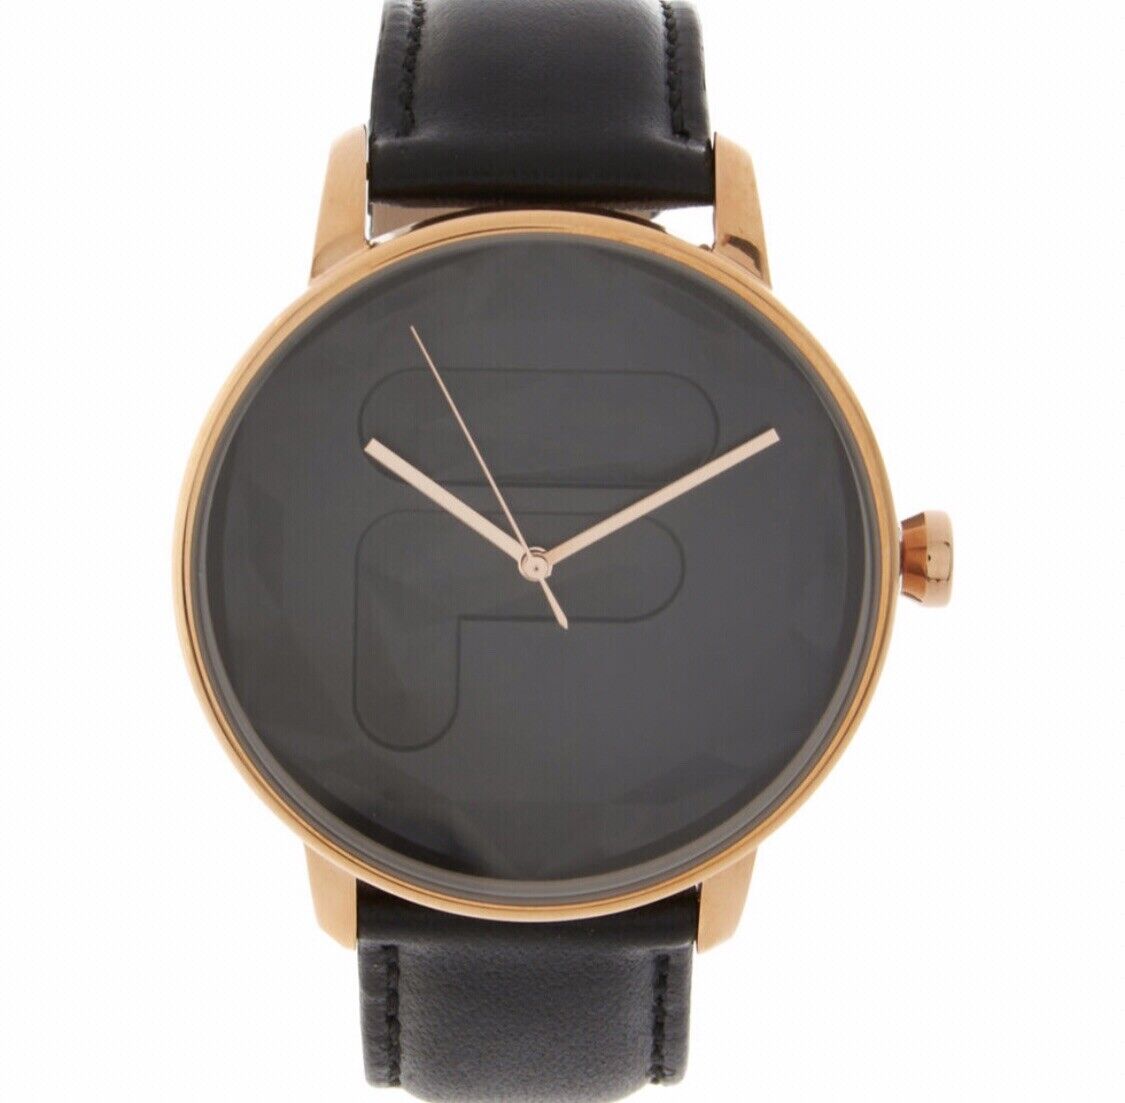 Genuine Fila Unisex Wrist Watch Genuine Leather Brand New With Box (RRP £105)